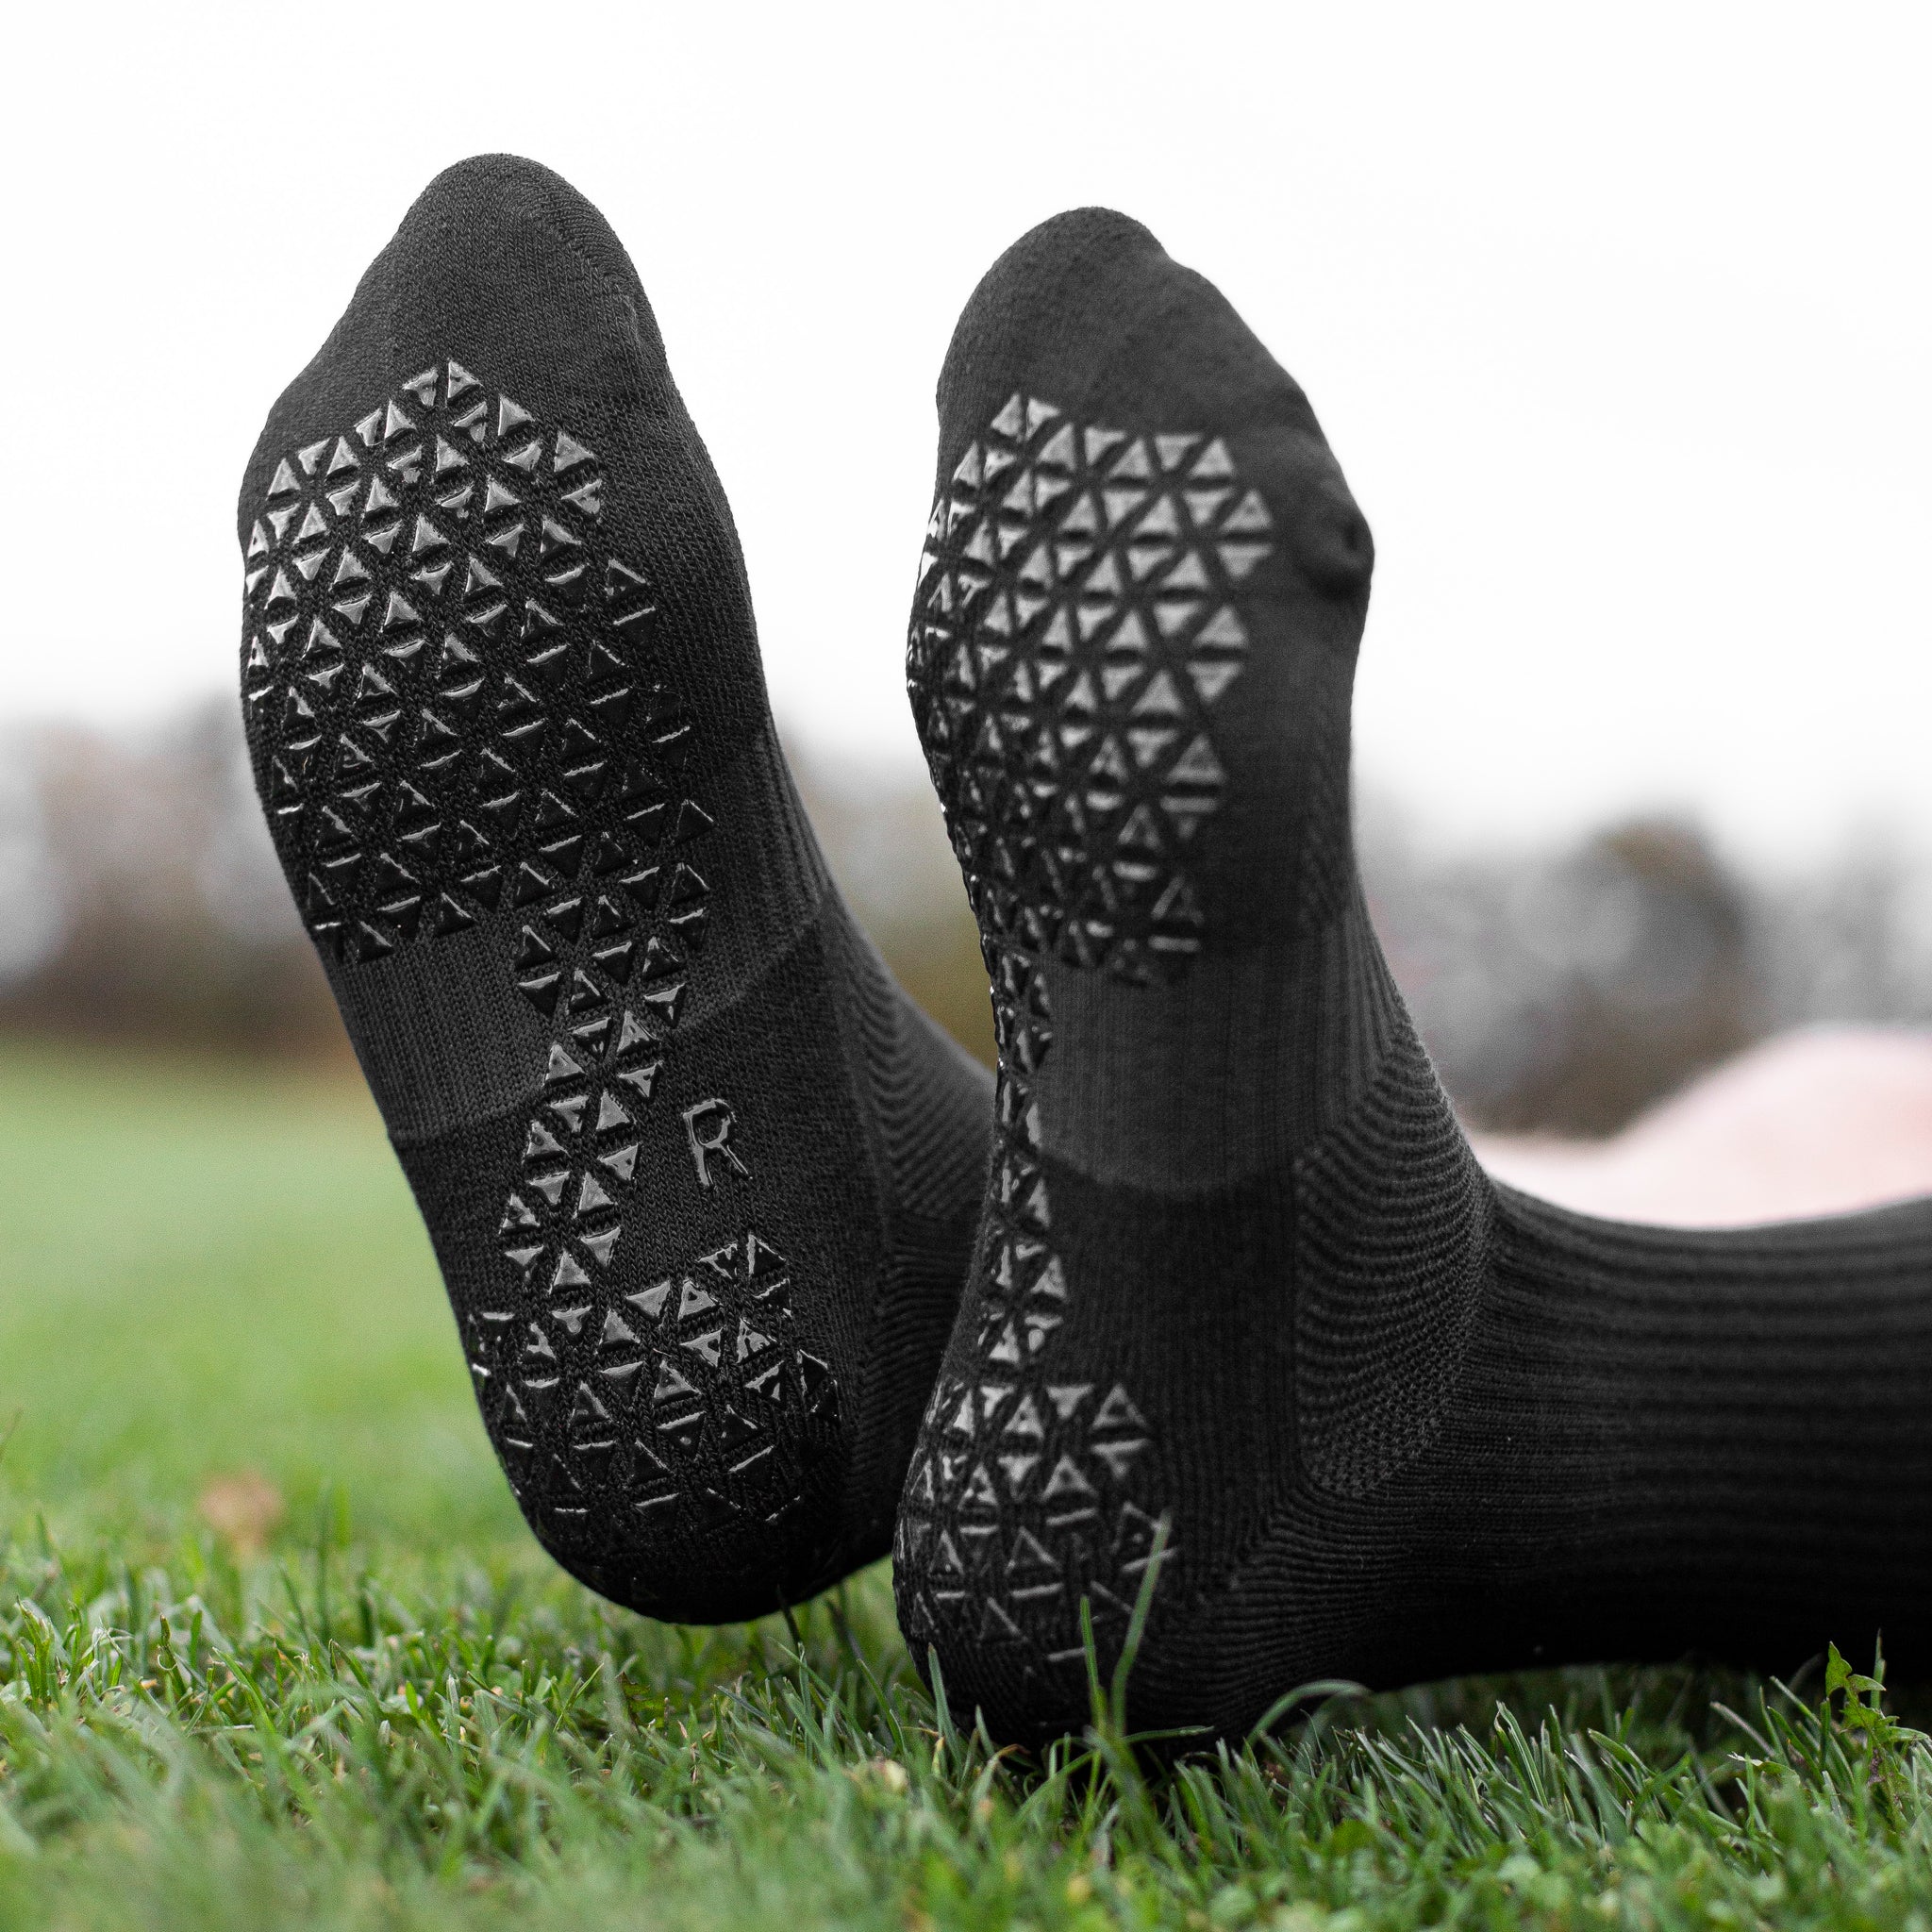 Pure Grip Socks Pro, SR4U